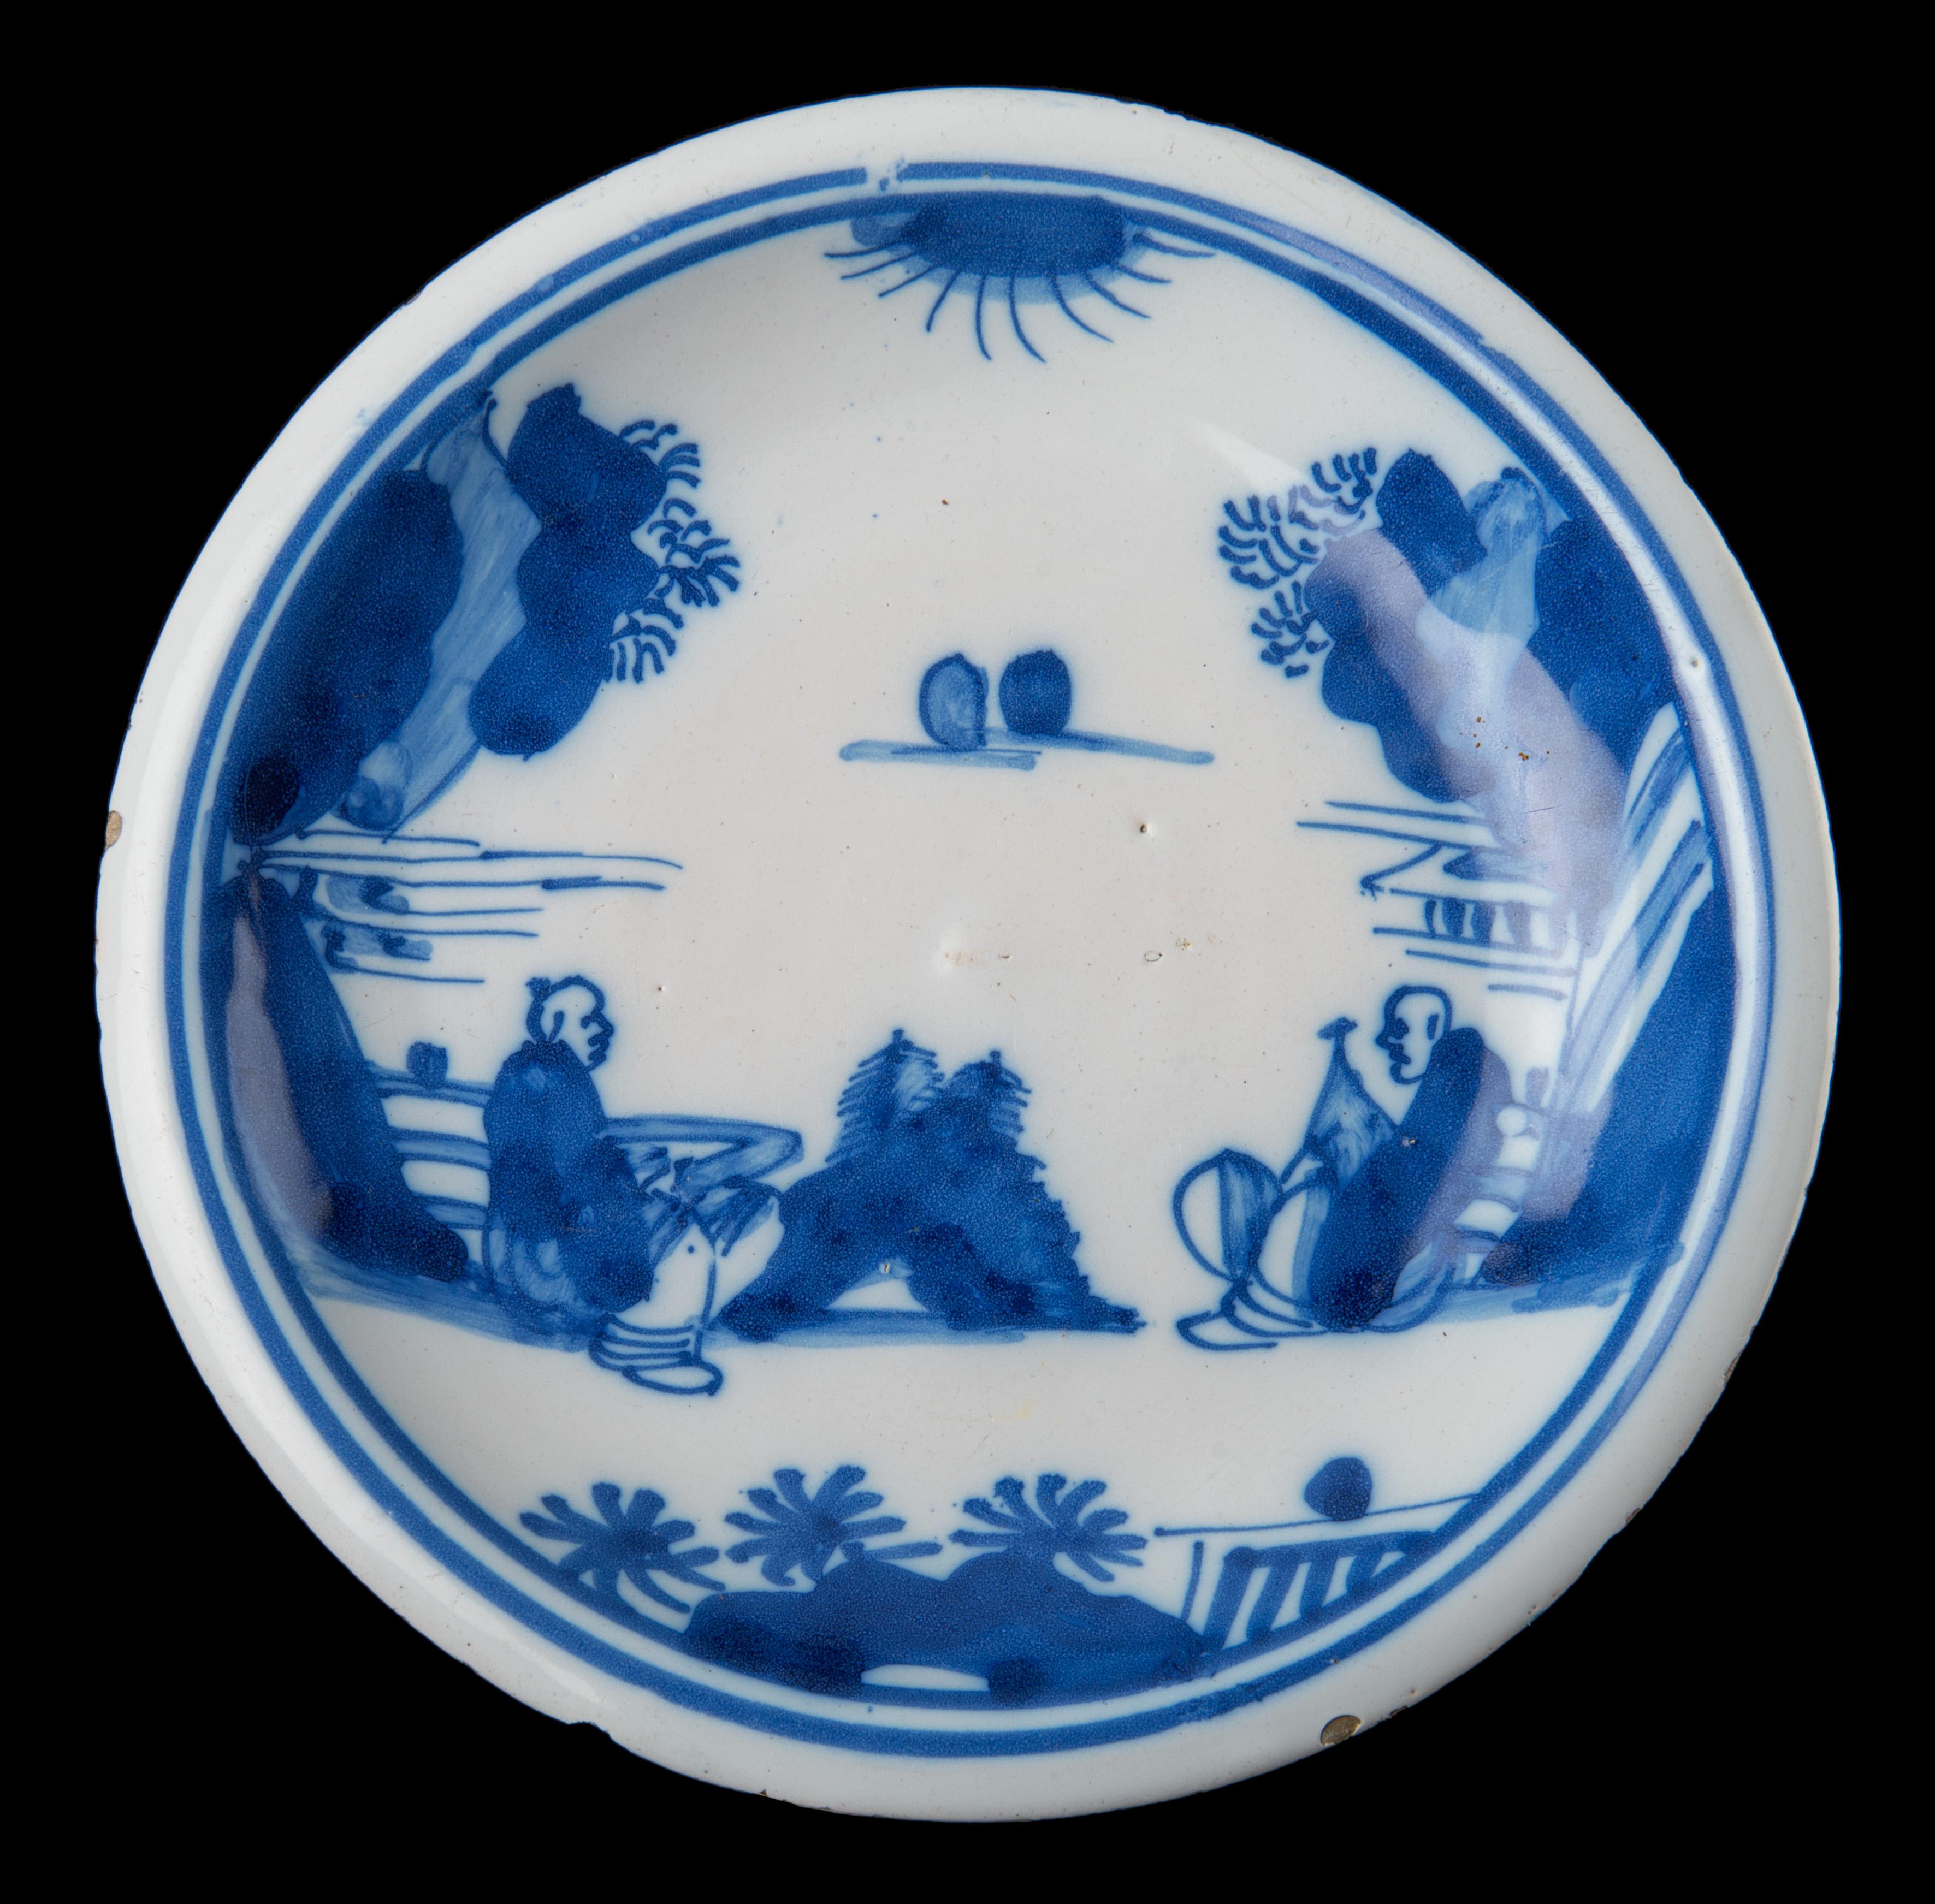 Blauer und weißer Teller mit einer Chinoiserie-Landschaft mit zwei sitzenden chinesischen Figuren in einem Doppelkreis. Die Rückseite des Tellers ist mit der Zahl 5 bemalt, und der Fußrand ist durchbrochen. Das Dekor ist von chinesischem Porzellan